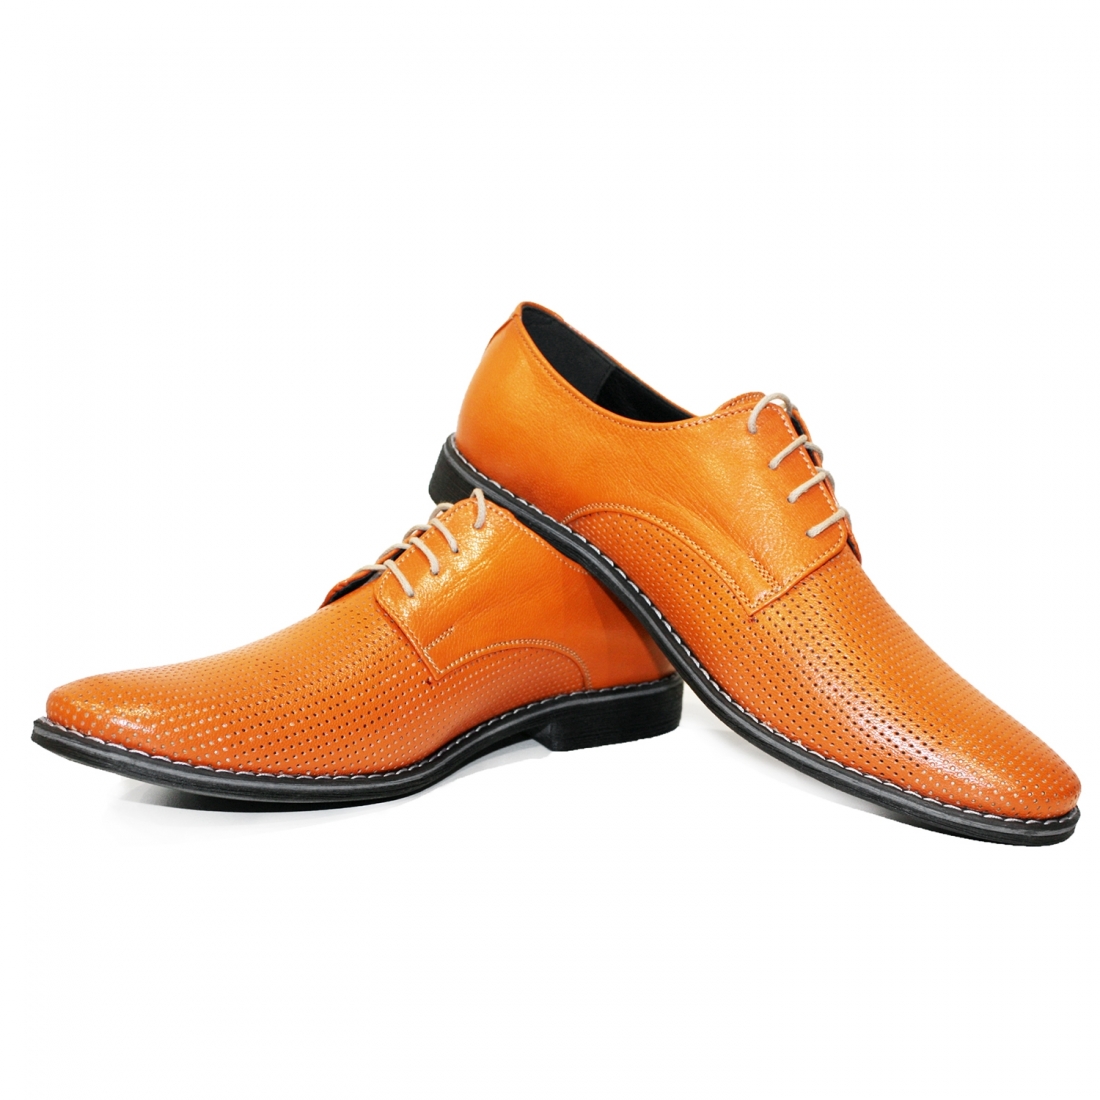 Modello Pomarone - Scarpe Classiche - Handmade Colorful Italian Leather Shoes